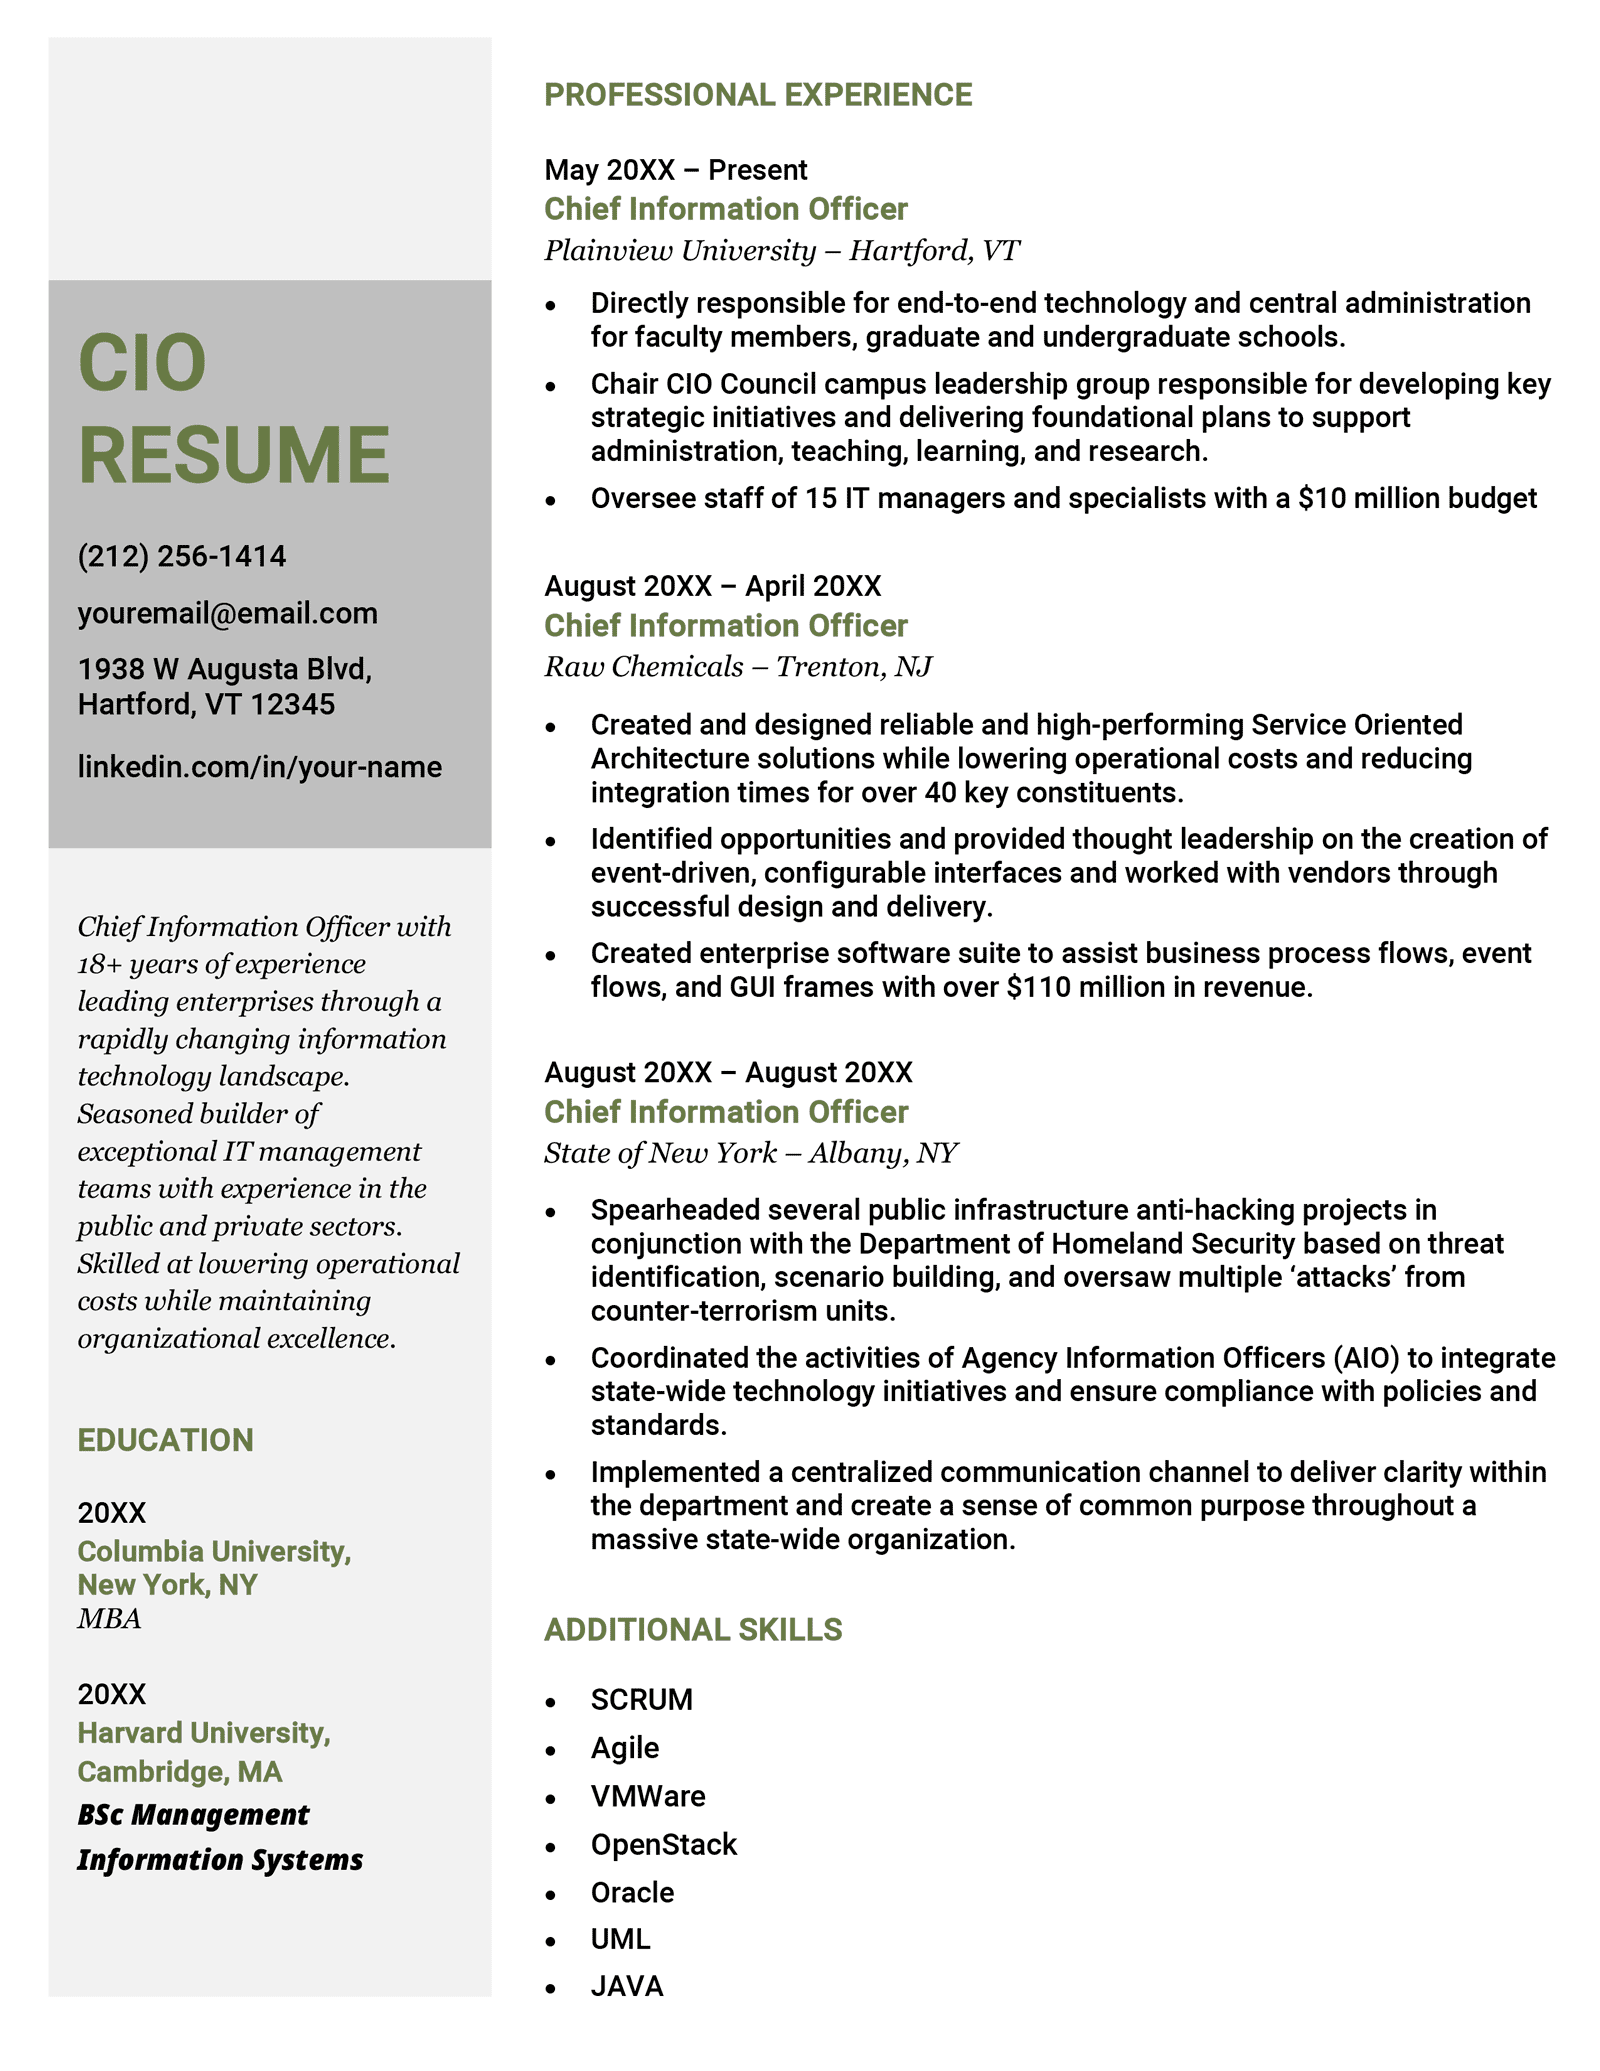 a CIO resume example